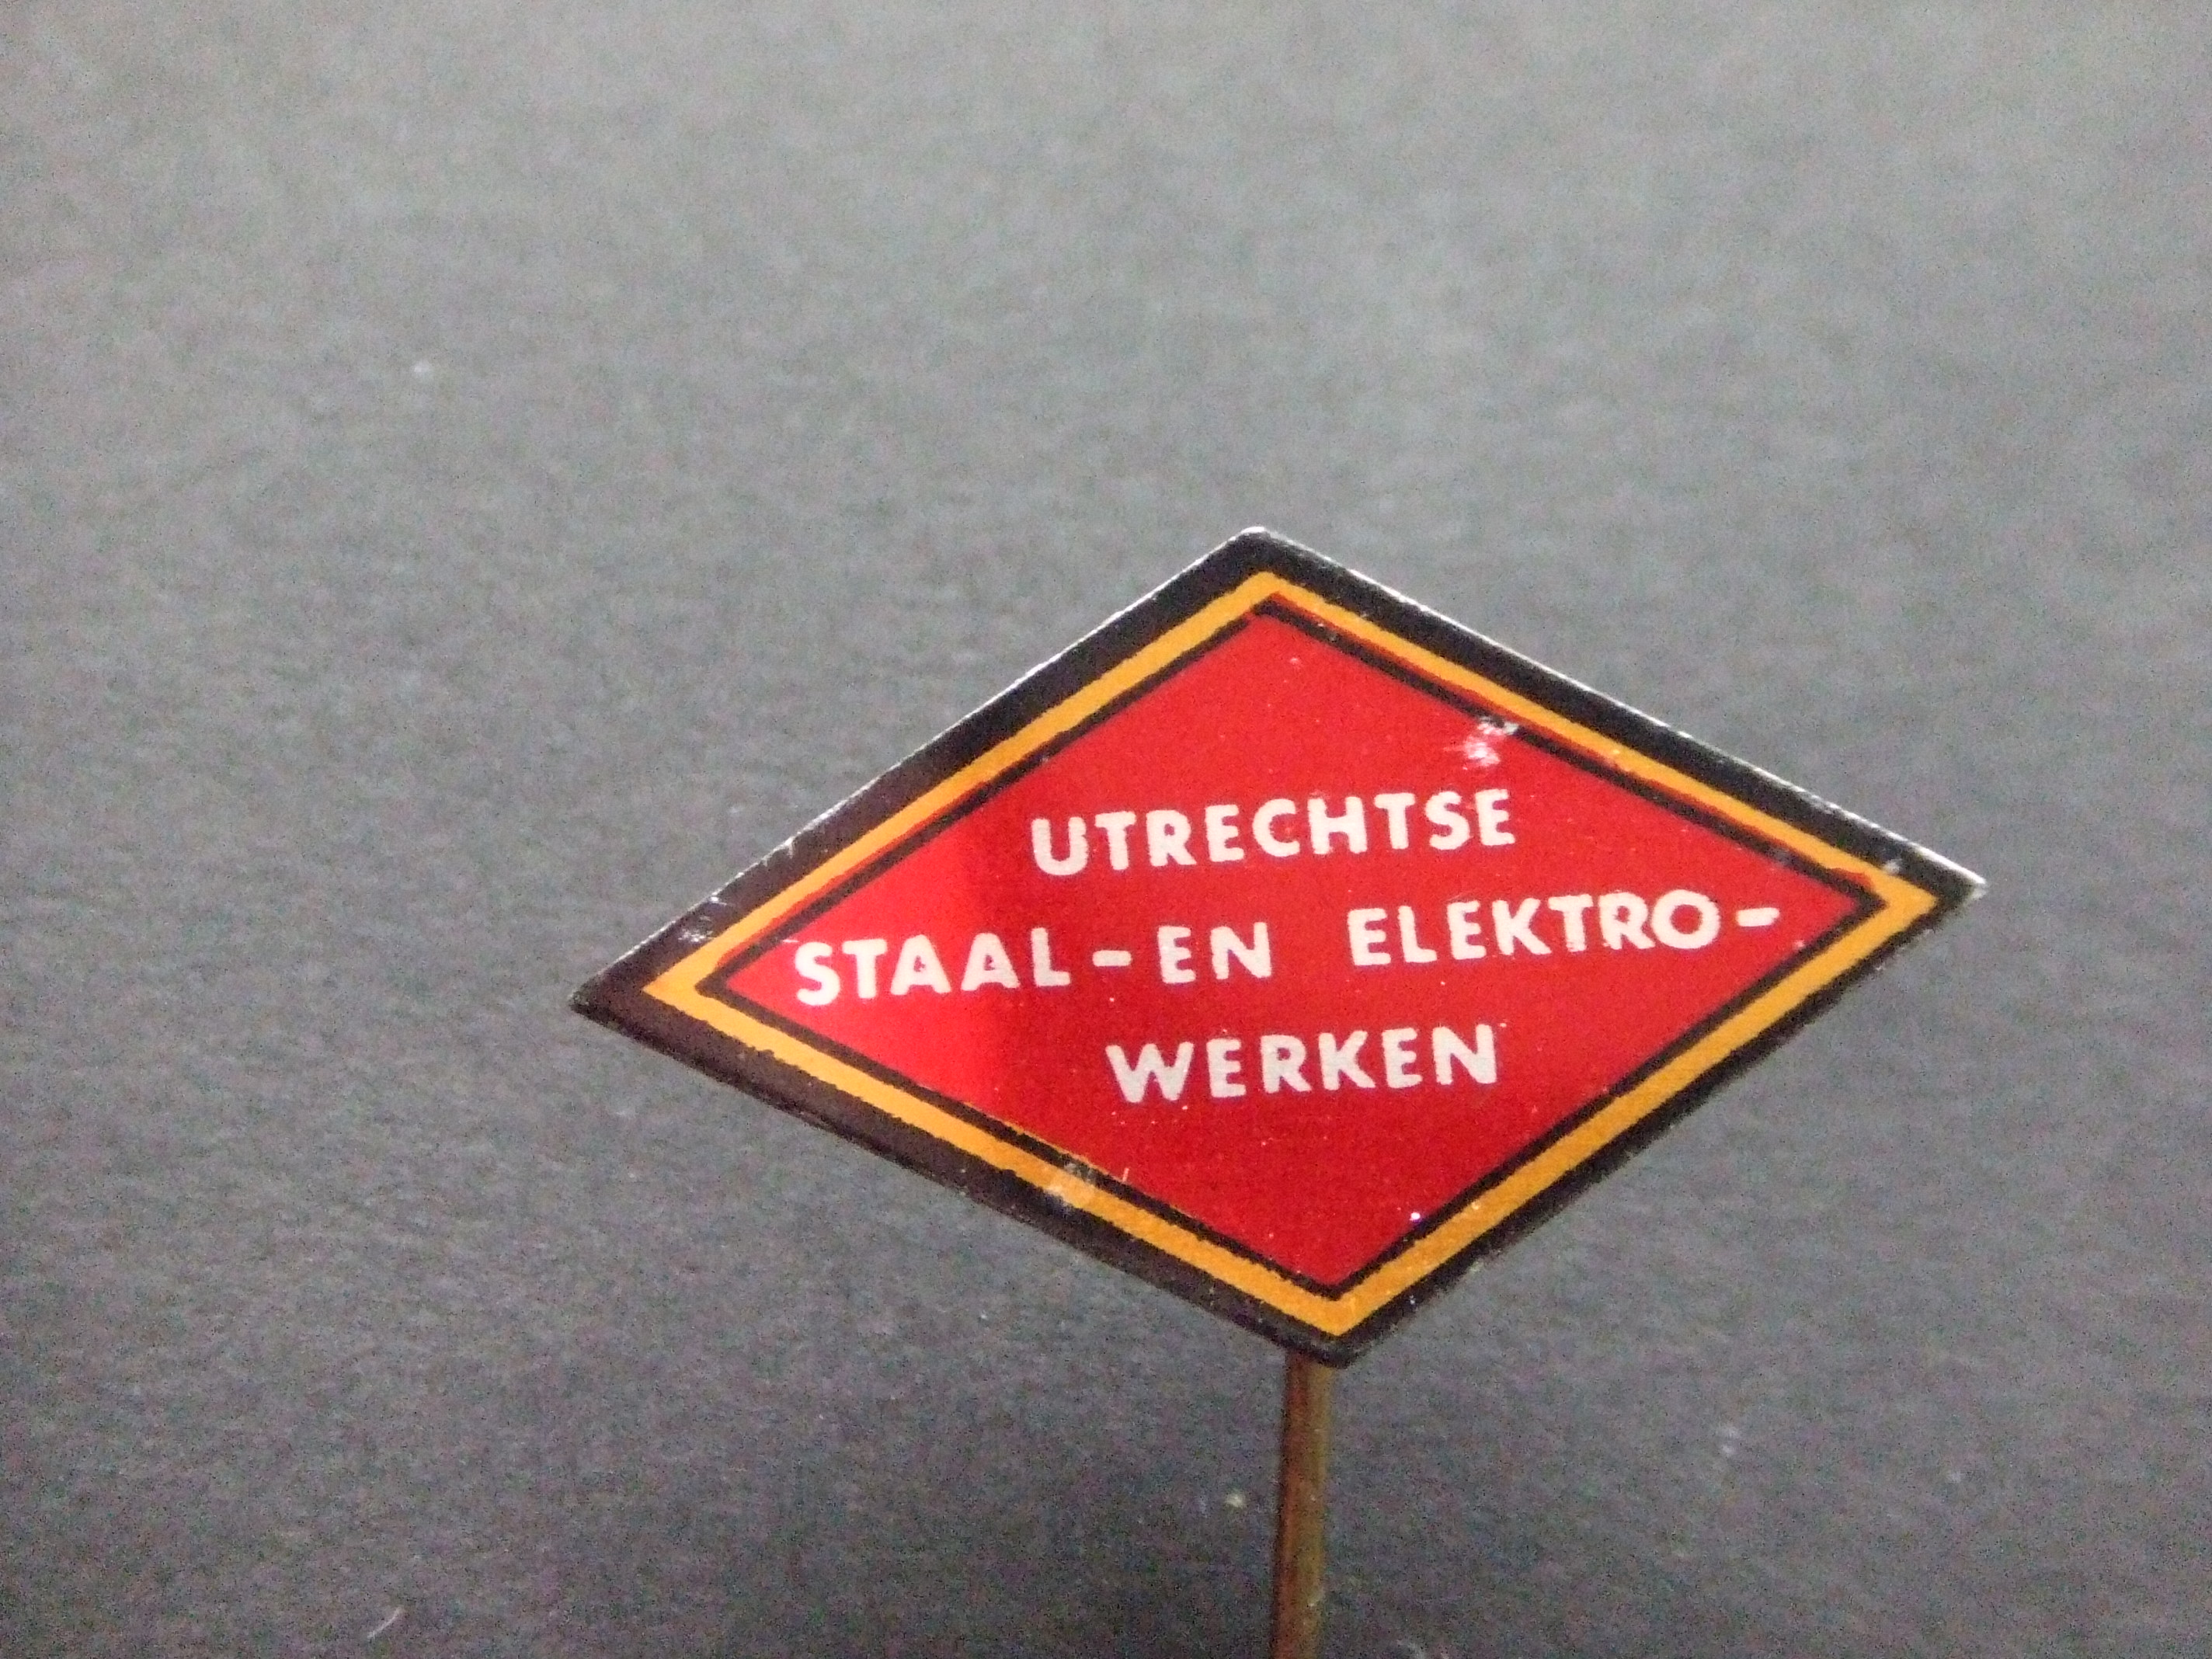 Utrechtse Staal en electrowerken